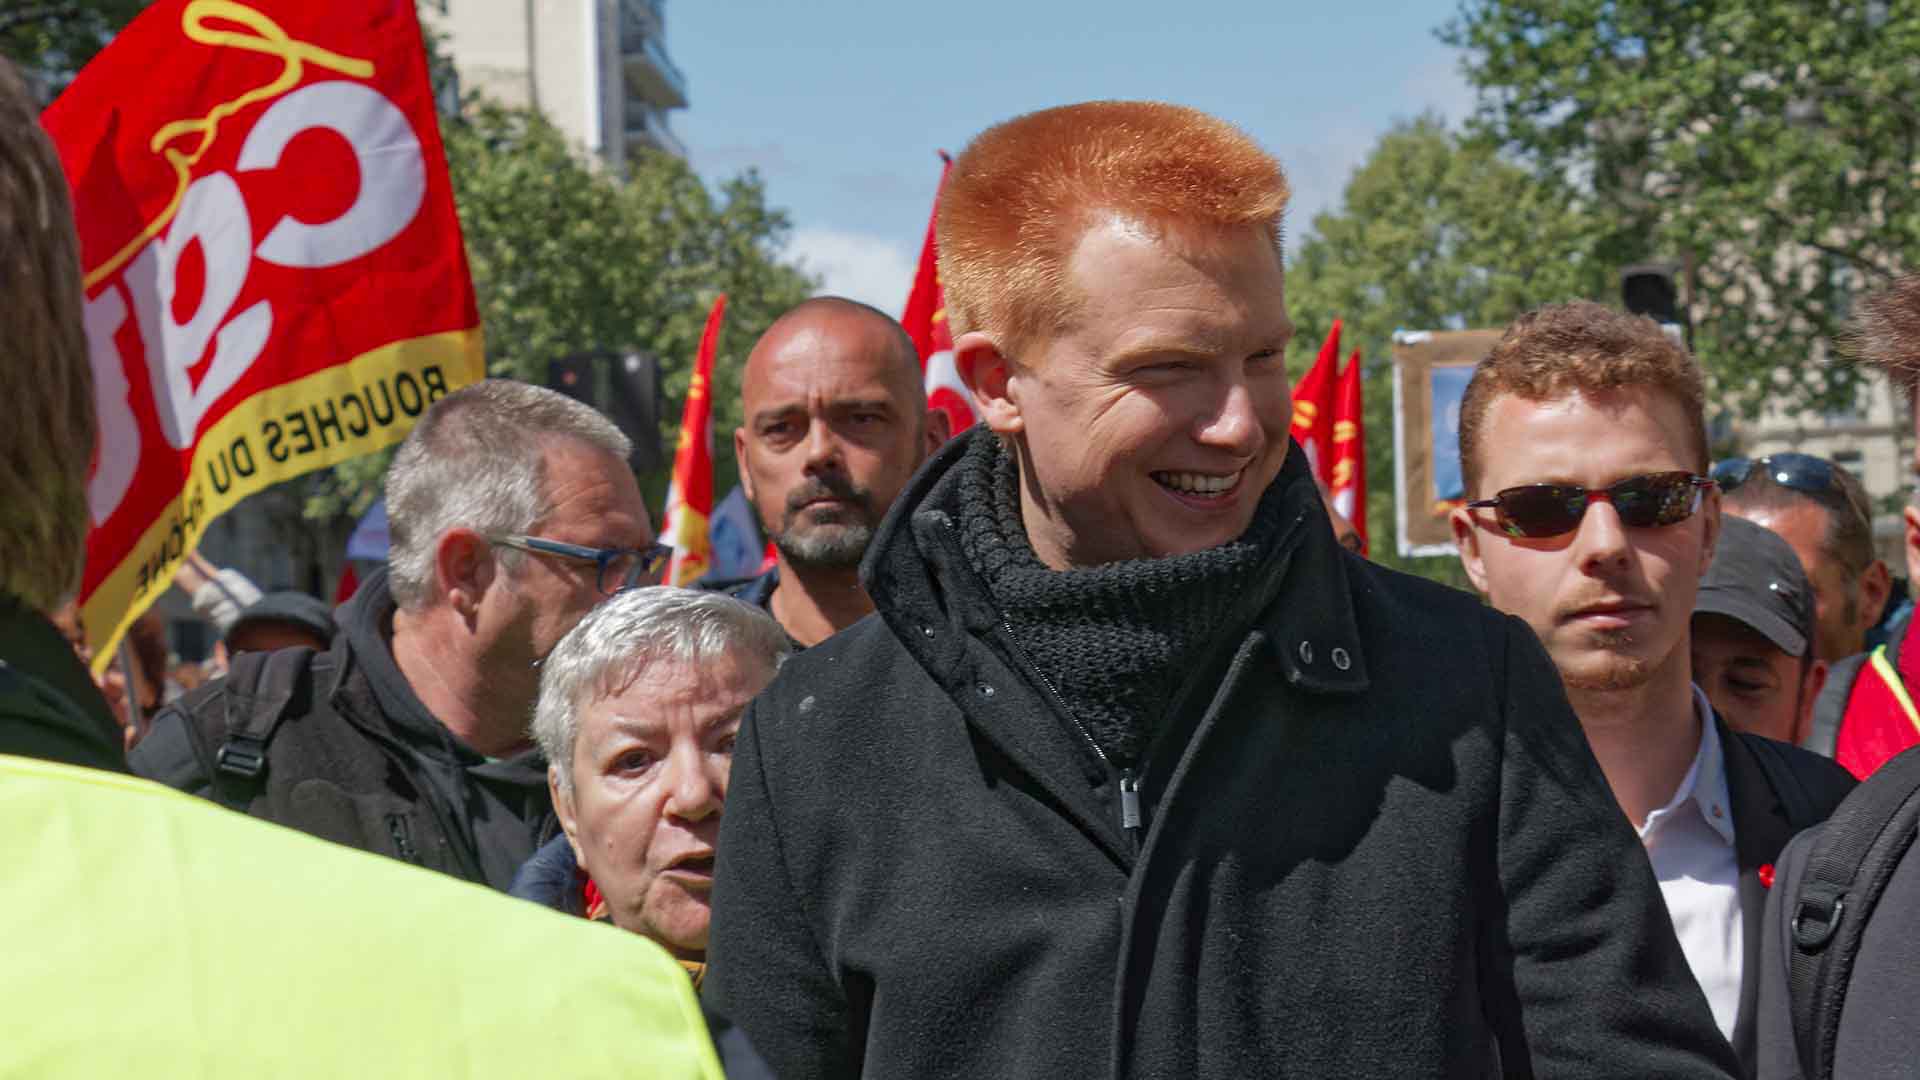 Manifestation des gilets jaunes le 27 Avril 2019, Adrien QUATTENENS de la France Insoumise 